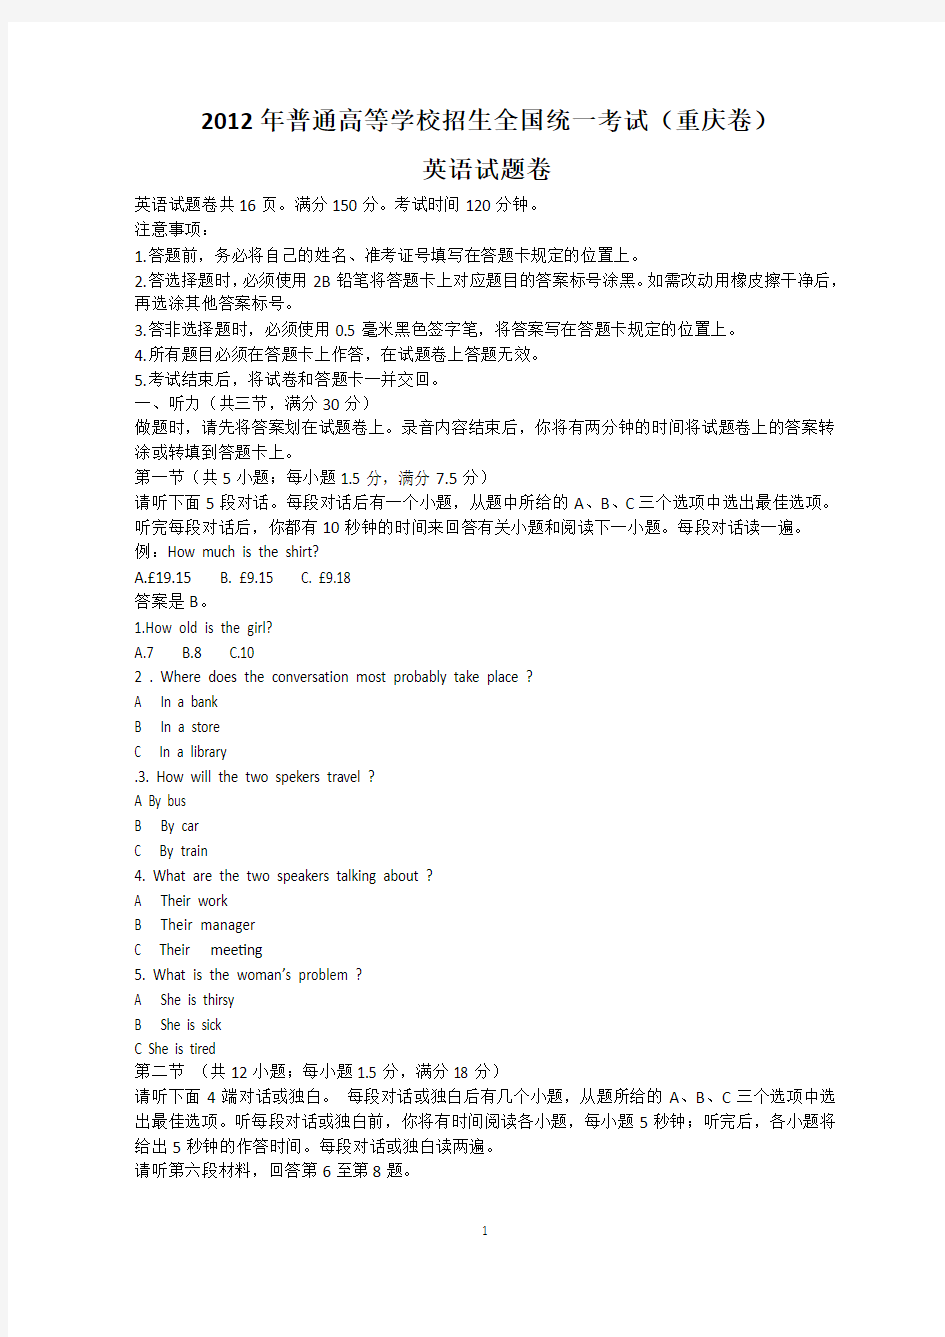 重庆高考2012年英语试题及答案(重庆卷,Word版)